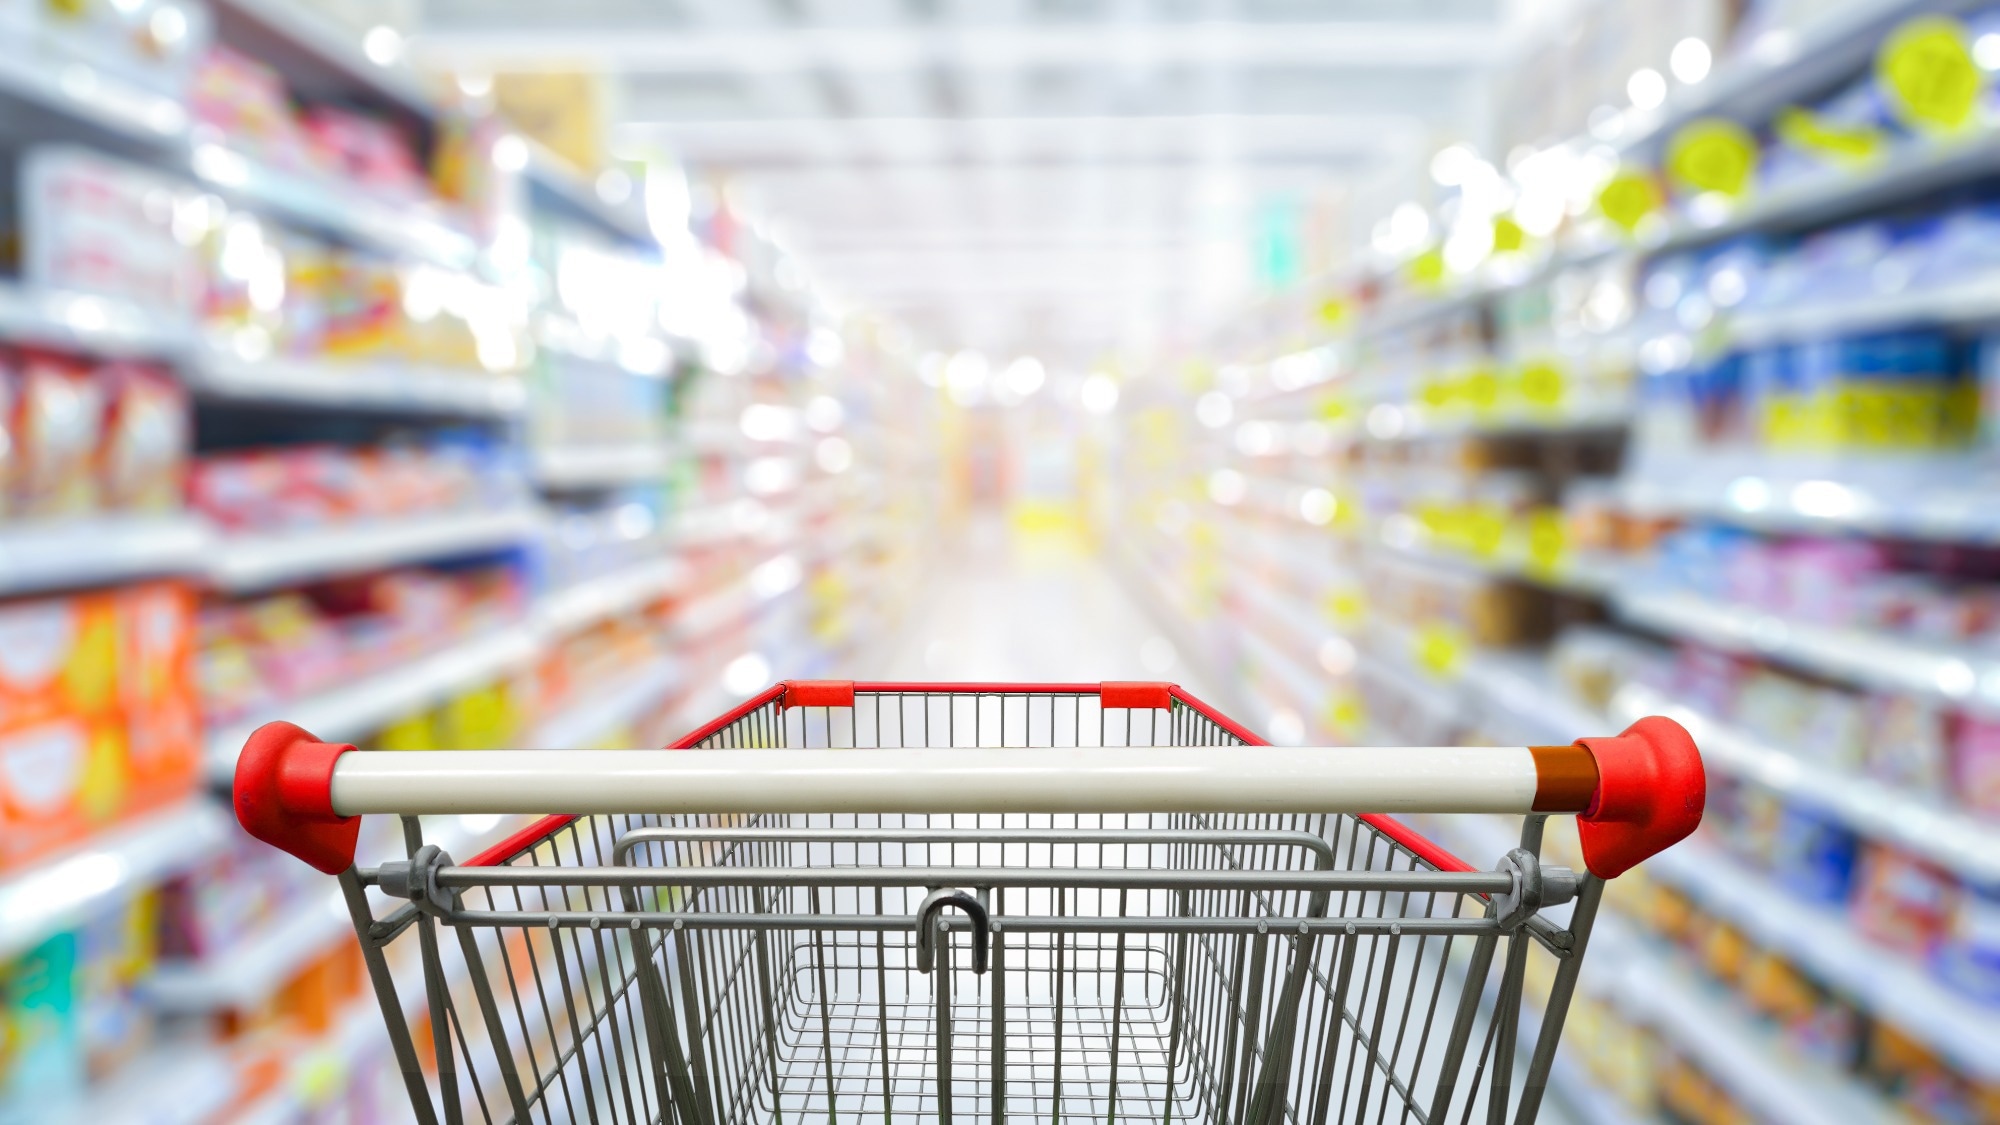 مطالعه: هدف اولیه رفاه خریداران در فروشگاه های مواد غذایی: حرکت به سمت انتخاب های غذایی سالم تر؟  اعتبار تصویر: nonc/Shutterstock.com